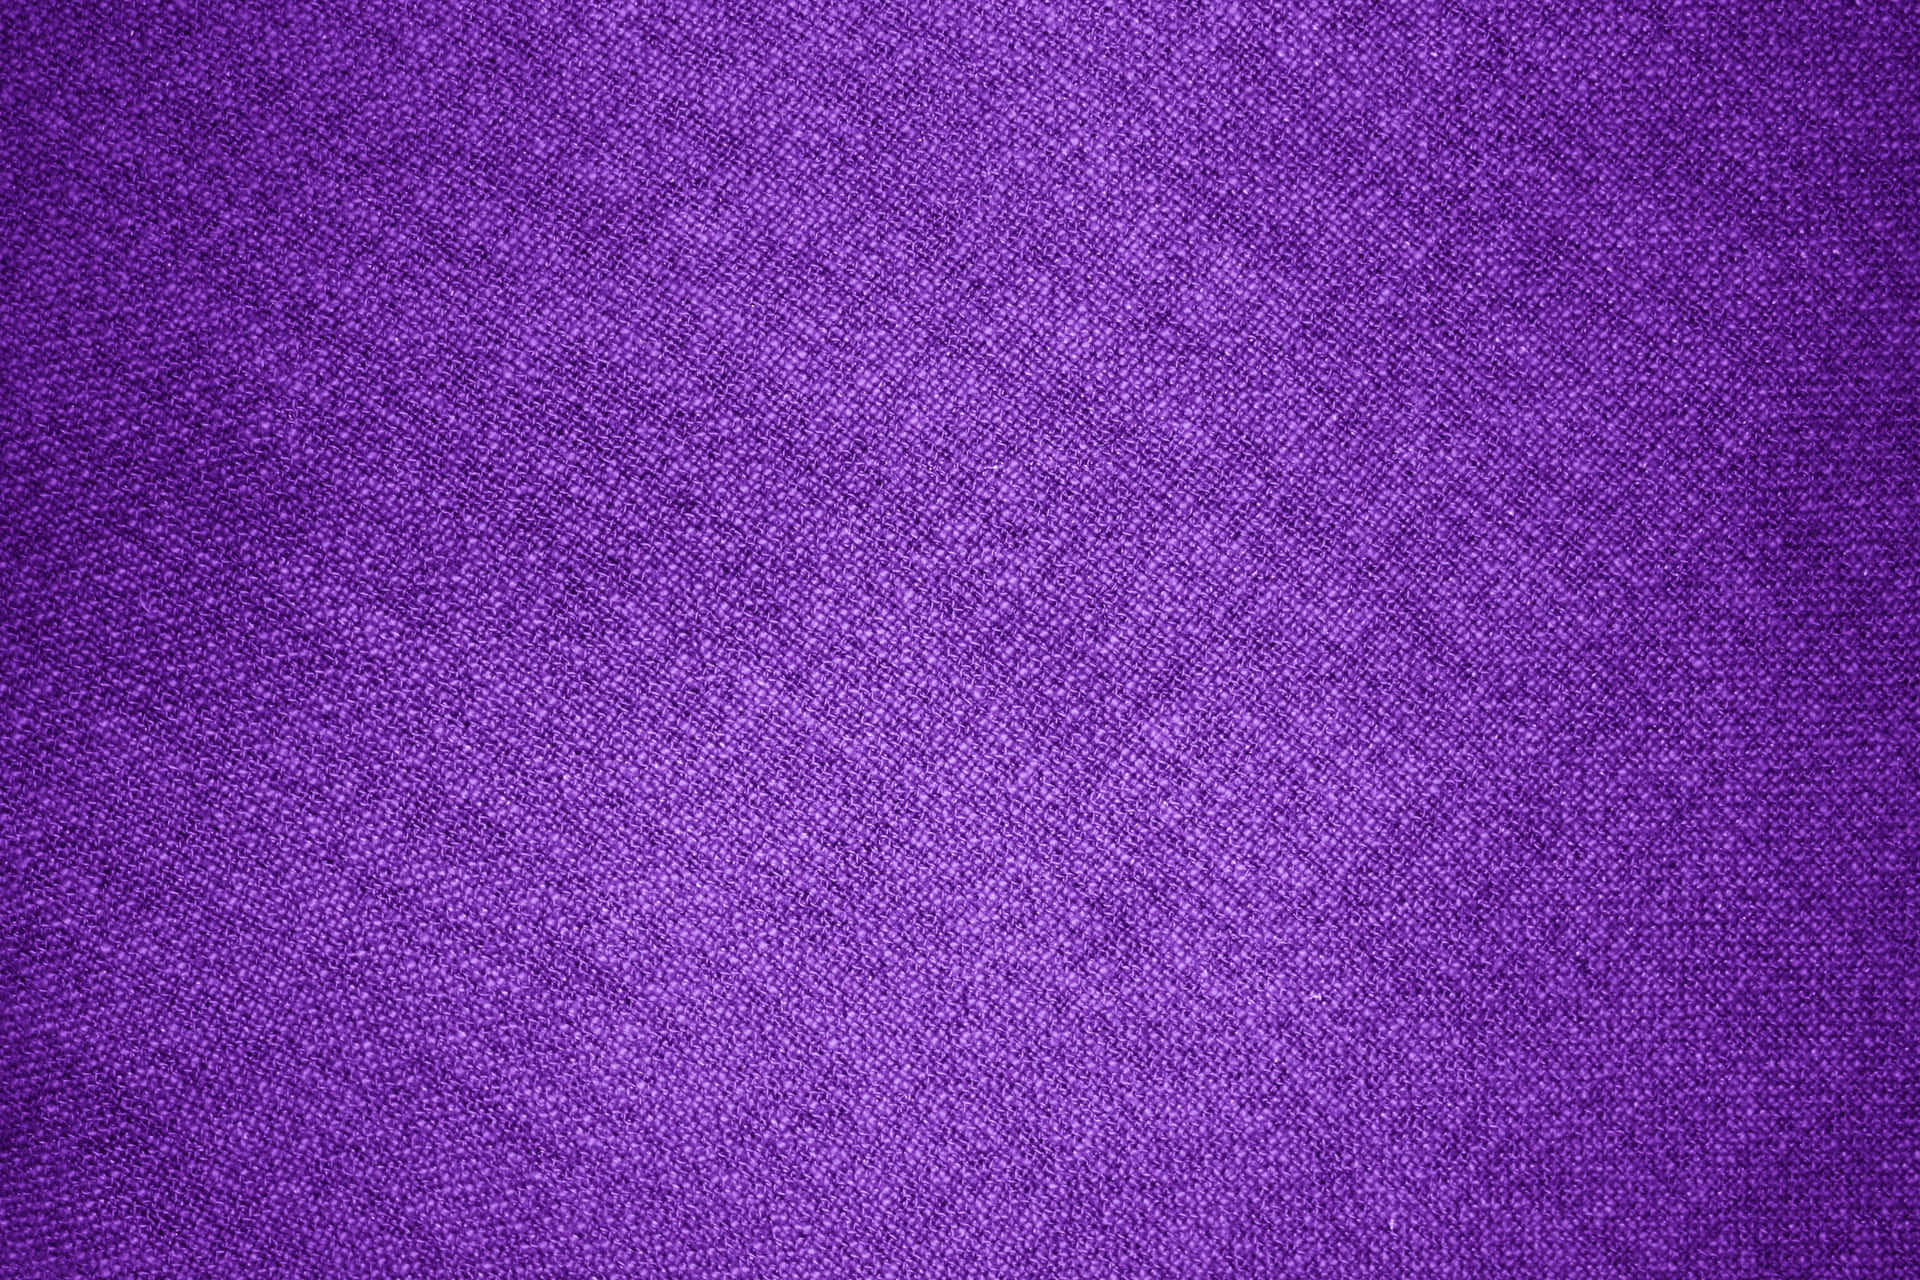 Texturaspara Photoshop De Tela Púrpura. Fondo de pantalla